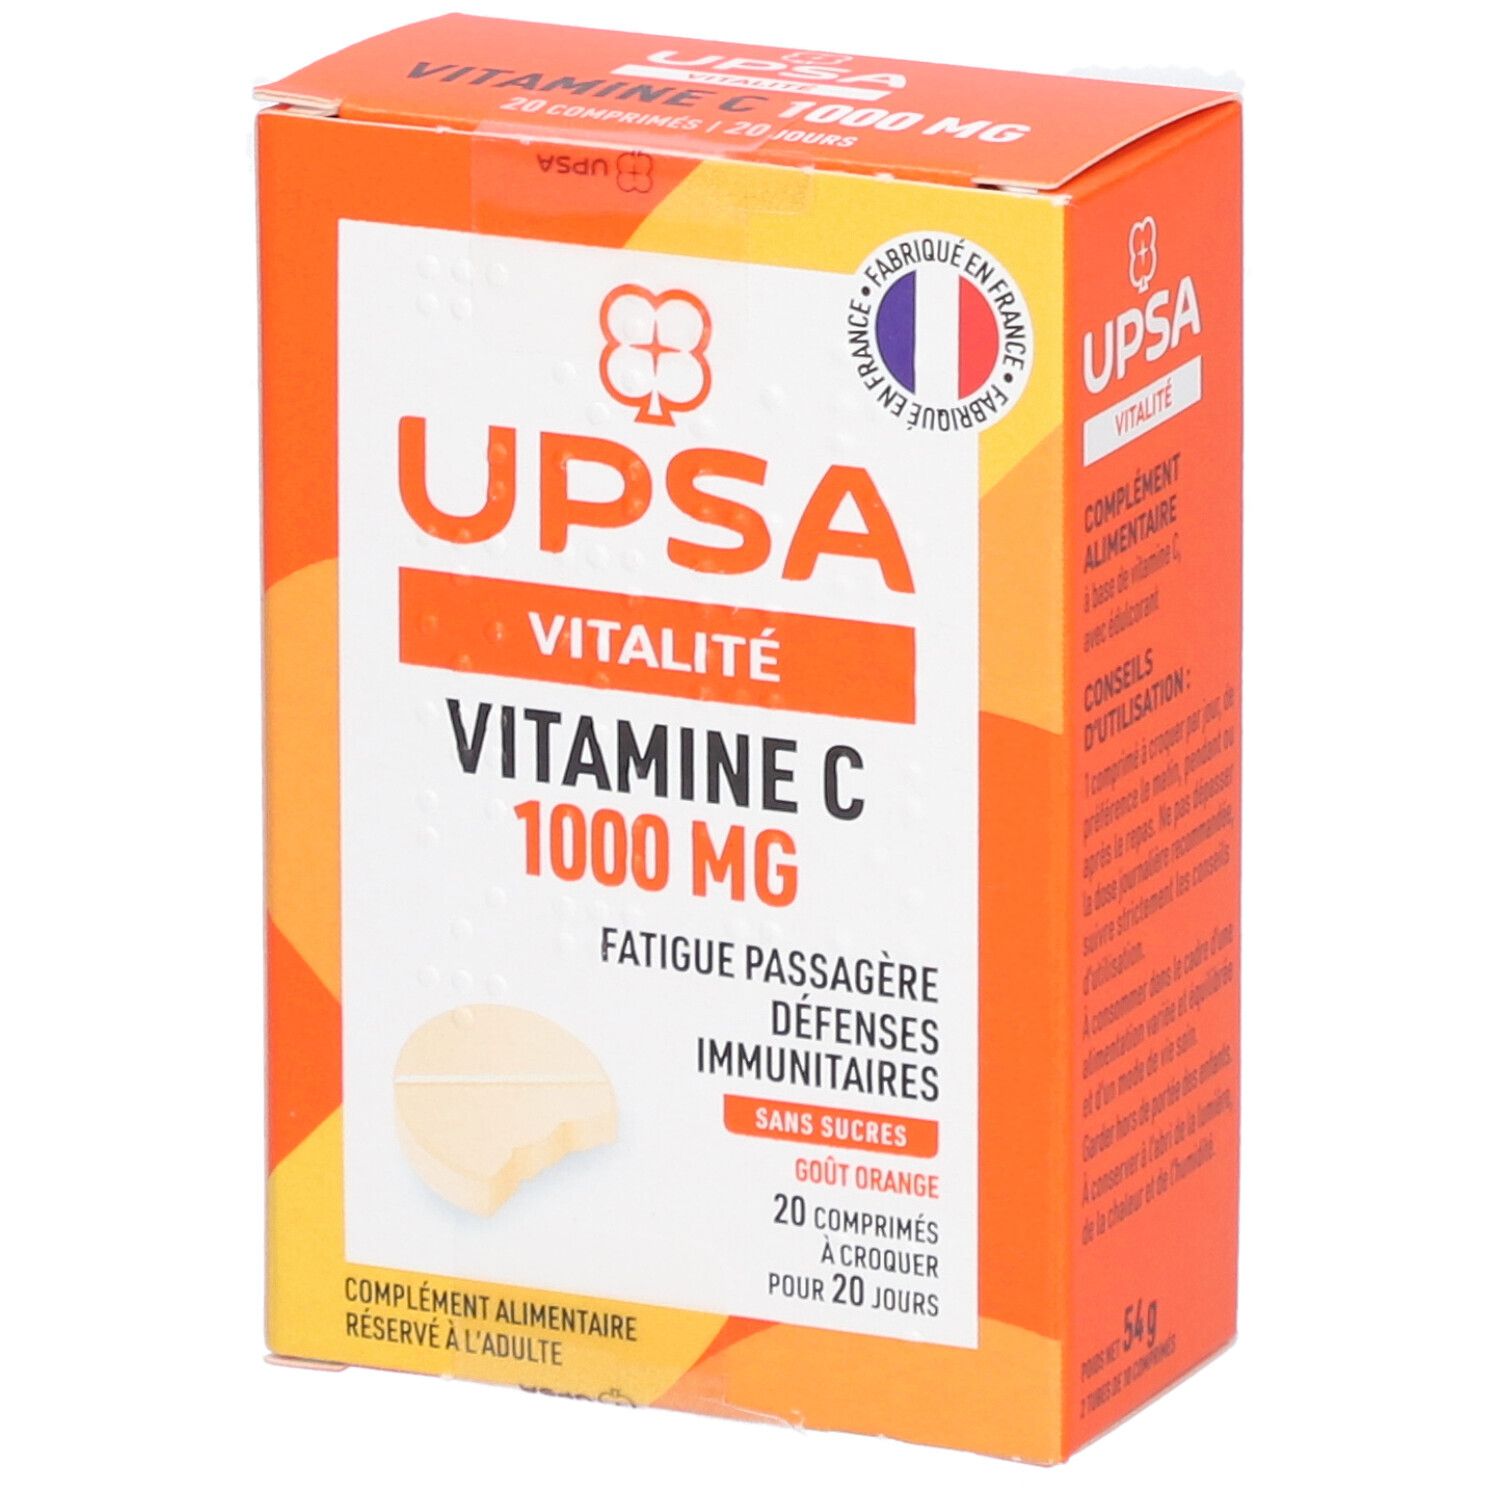 Vitamine C Upsa 1000 mg - 20 comprimés à croquer - Adulte - Complément alimentaire sans sucres, goût